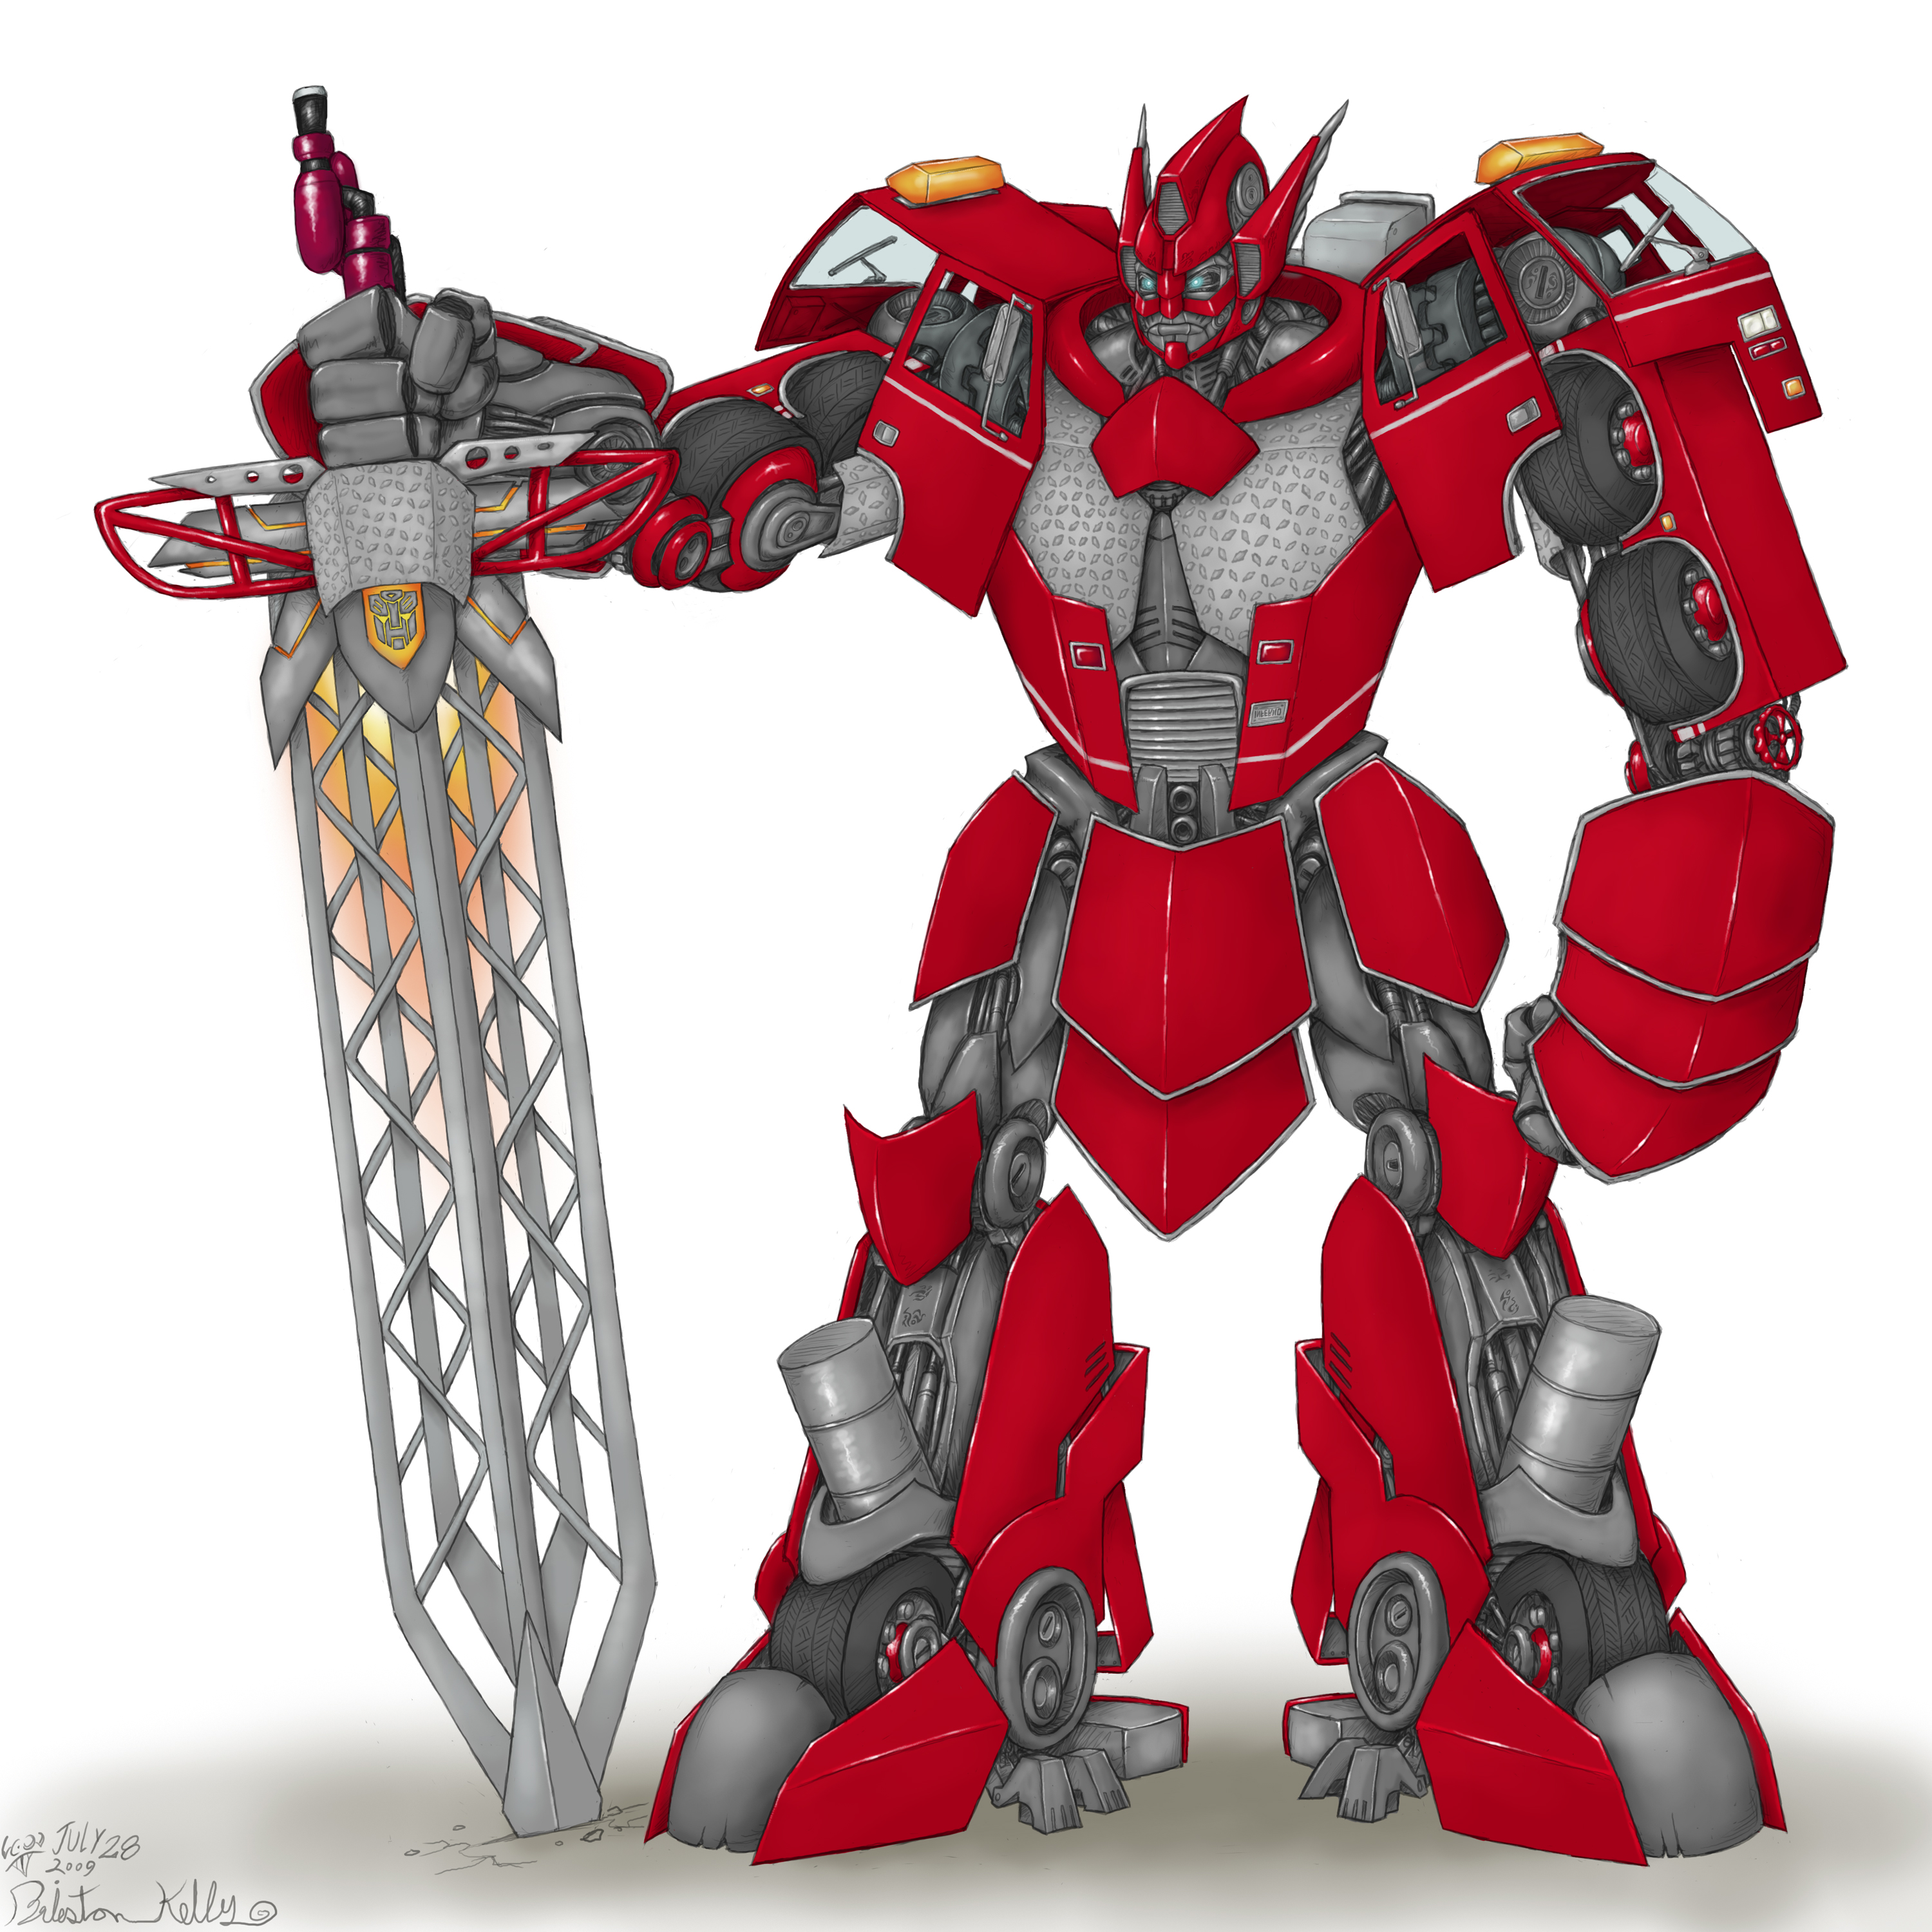 Red transformer. Красный рыцарь трансформеры. Инферно трансформер. Рыцари трансформеры арт. Трансформер Рыцари талисмана.